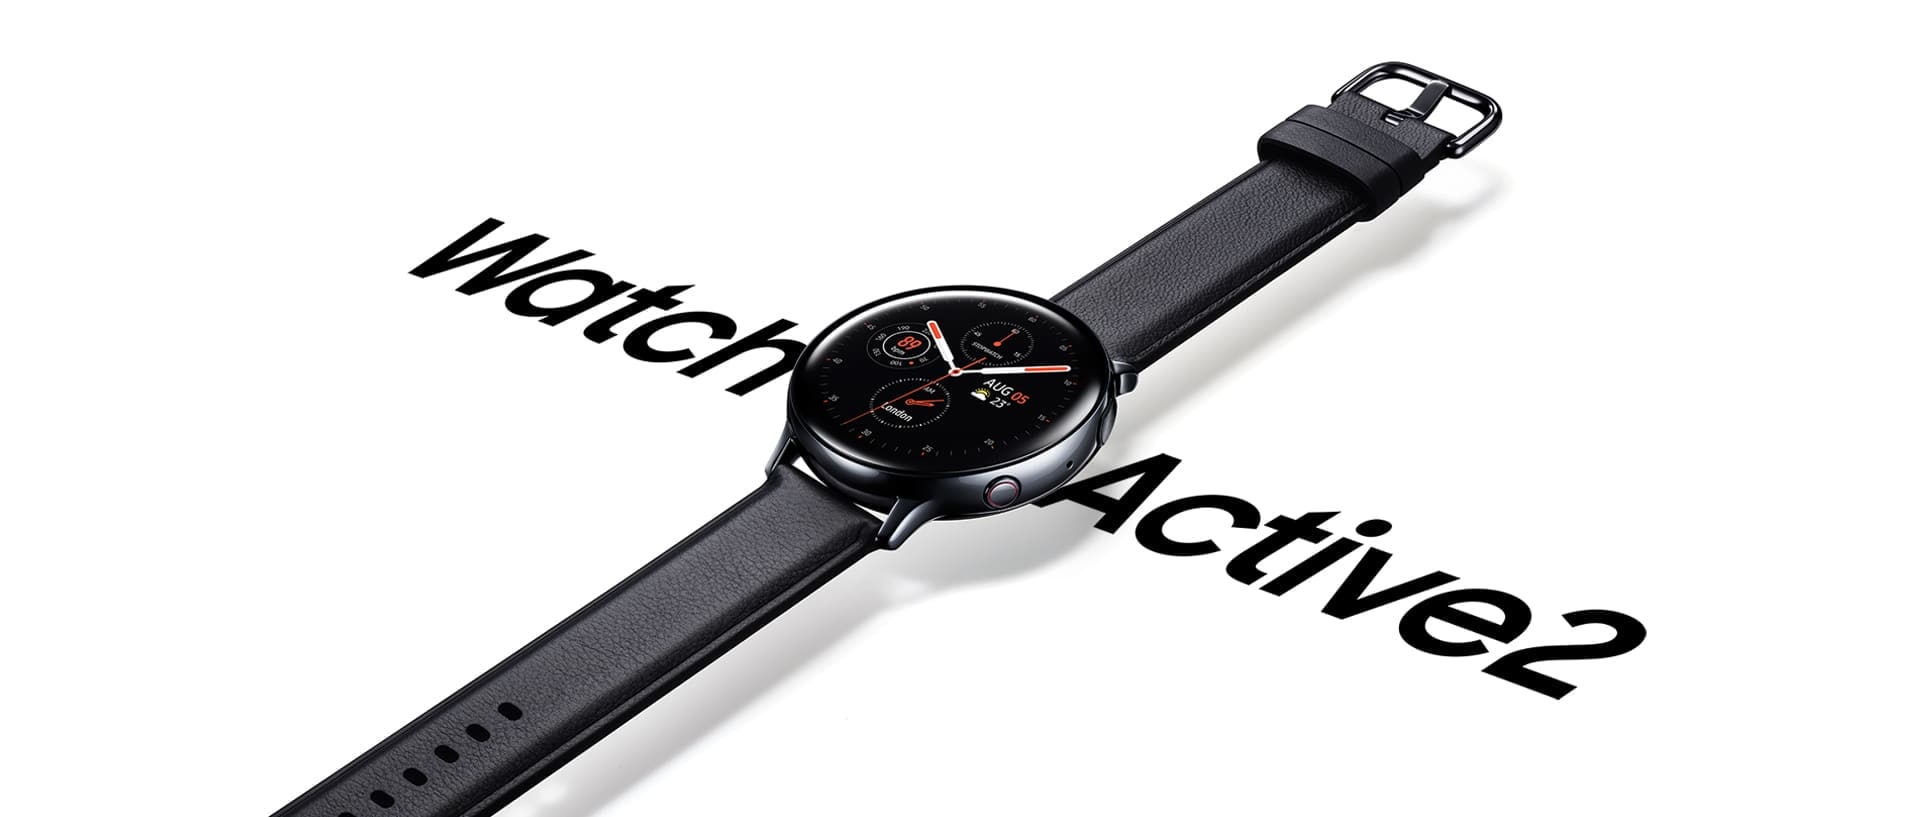 En rostfri svart Galaxy Watch active2 med svart läderarmband svävar över orden ”Watch Active2” i en stor font under.